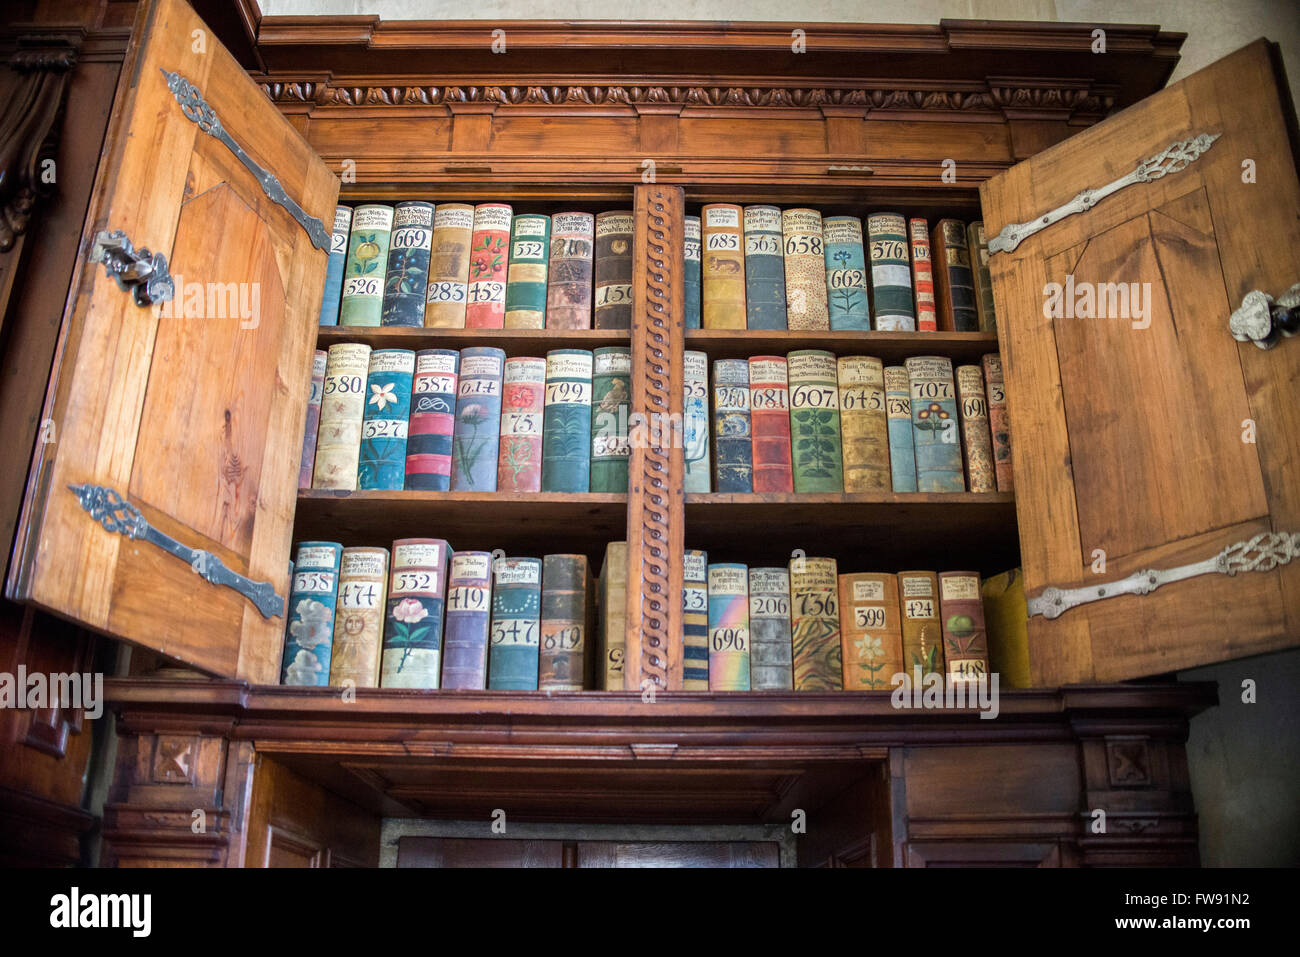 Praga, 18 Marzo : molto vecchi libri nella cattedrale di San Vito (Castello di Praga) il 18 marzo 2016 a Praga - Repubblica Ceca Foto Stock